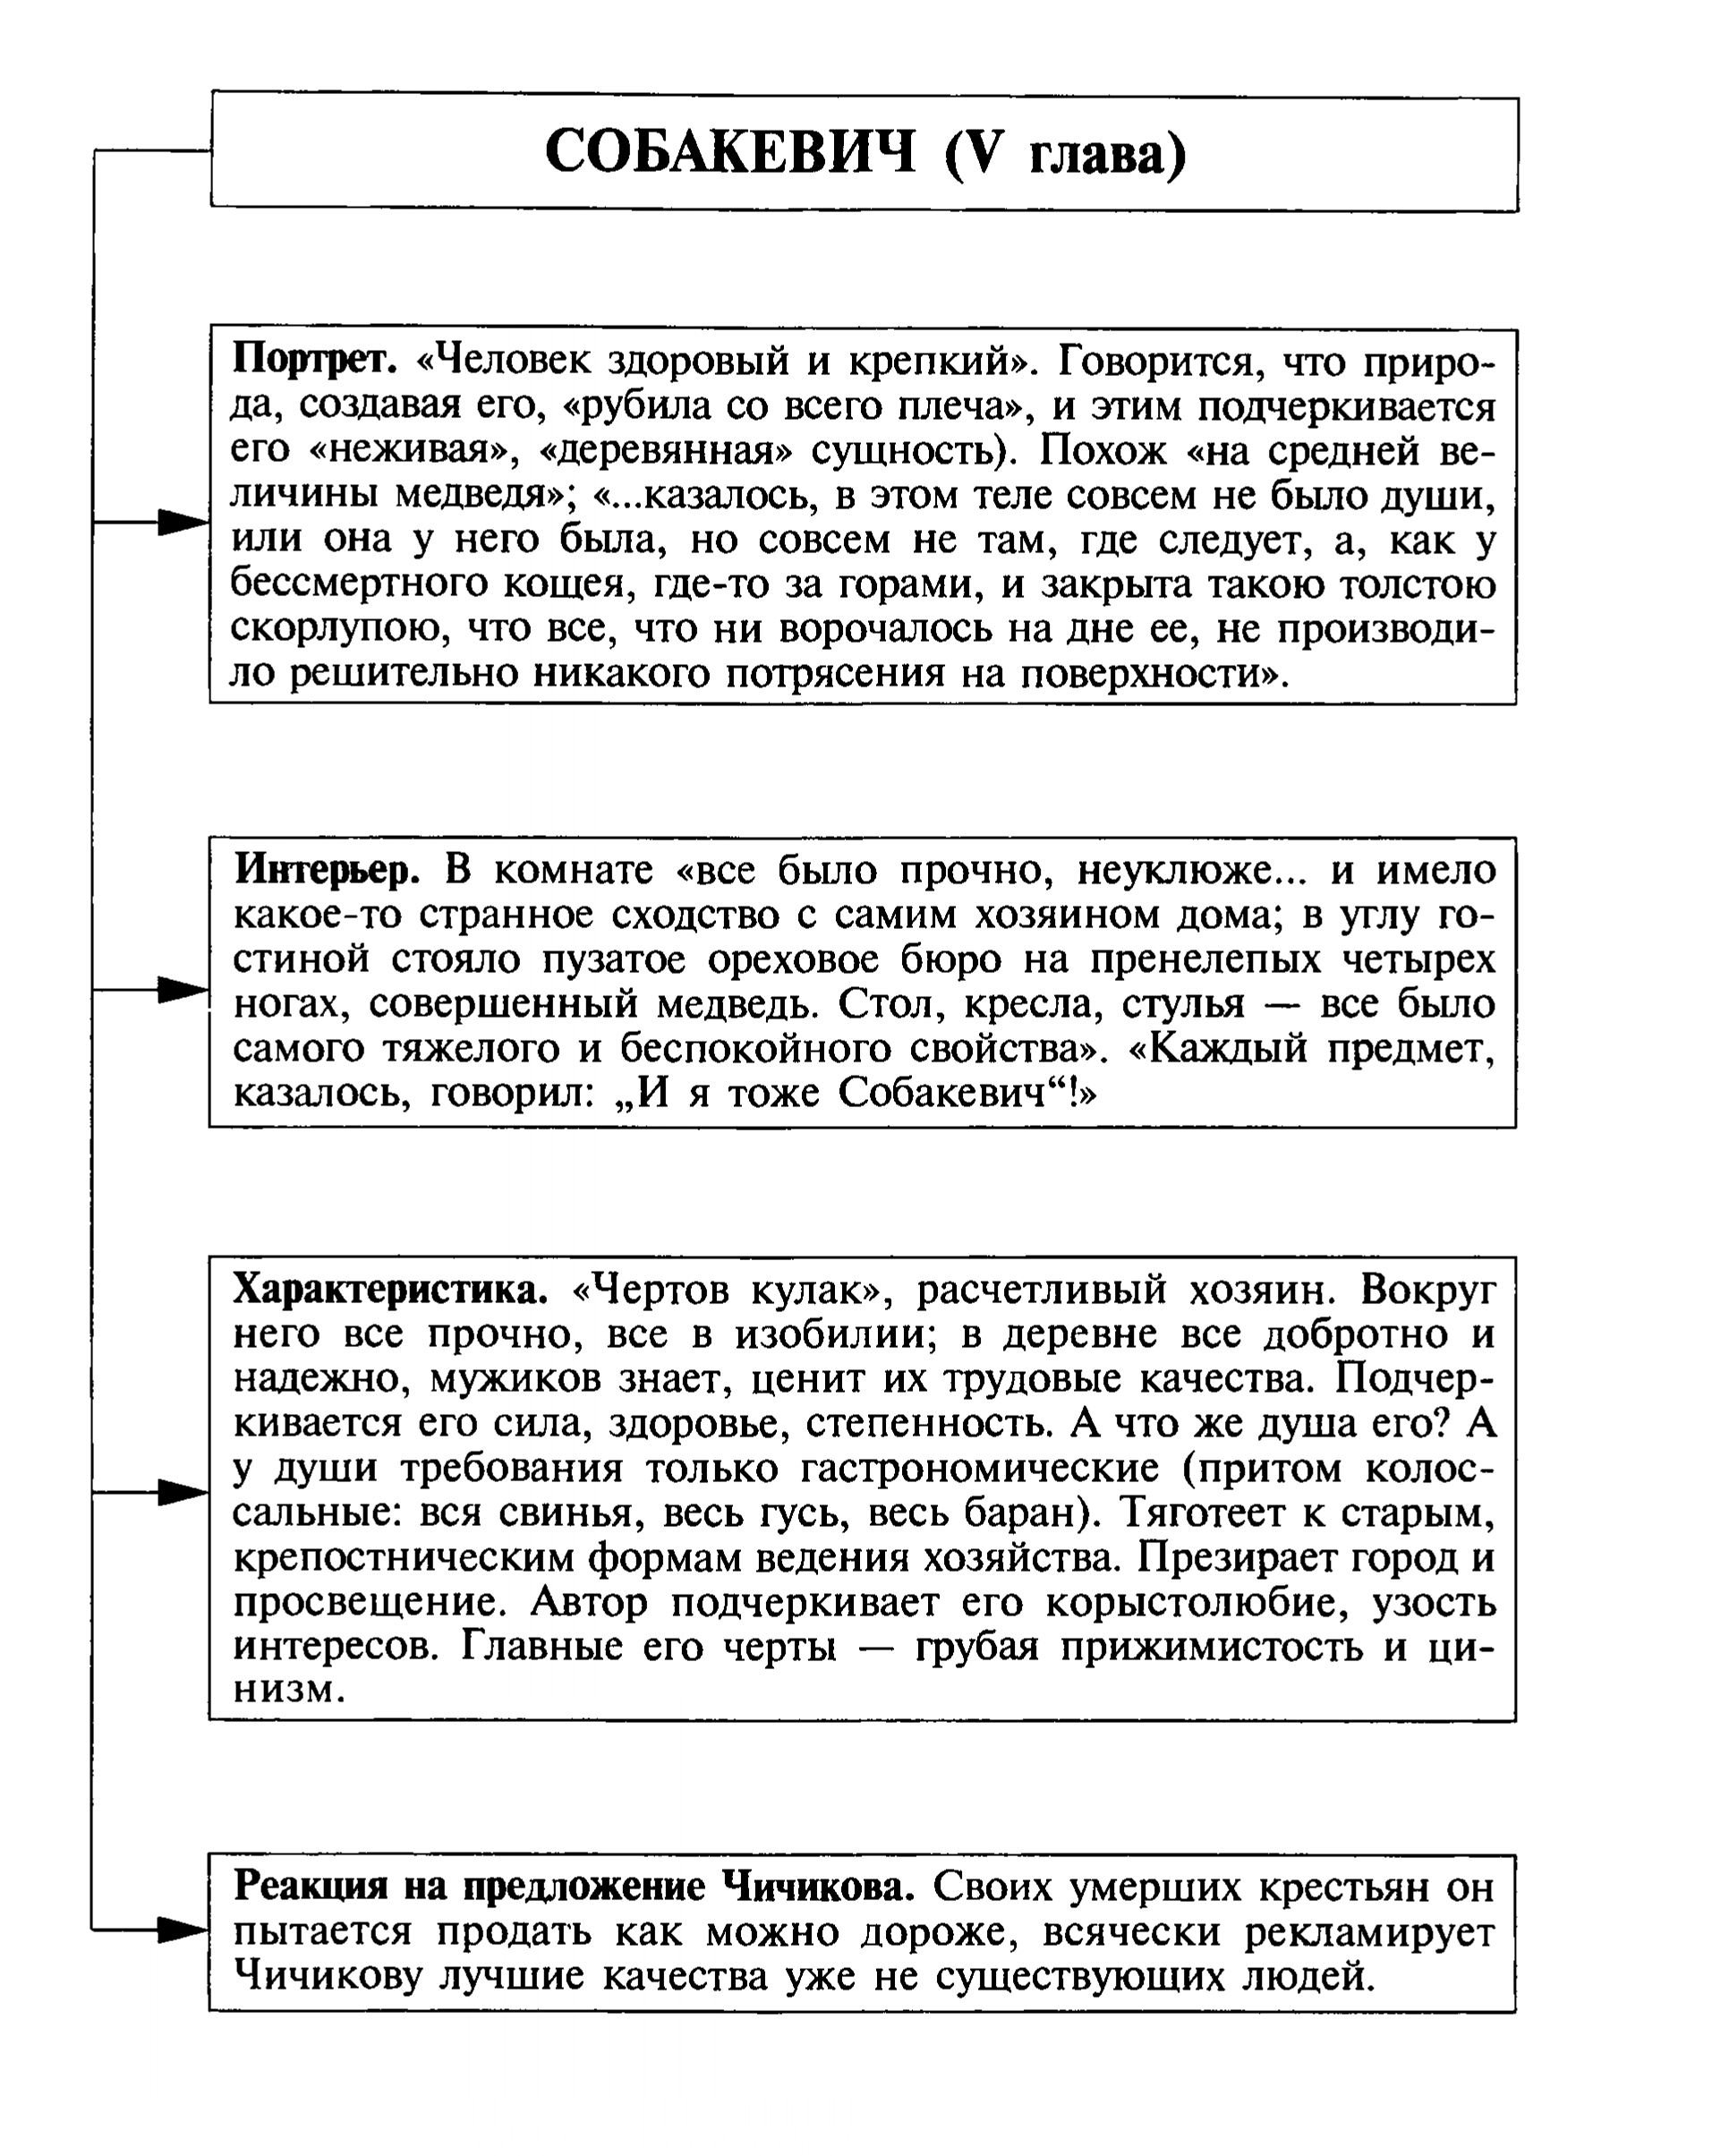 Собакевич (таблица)